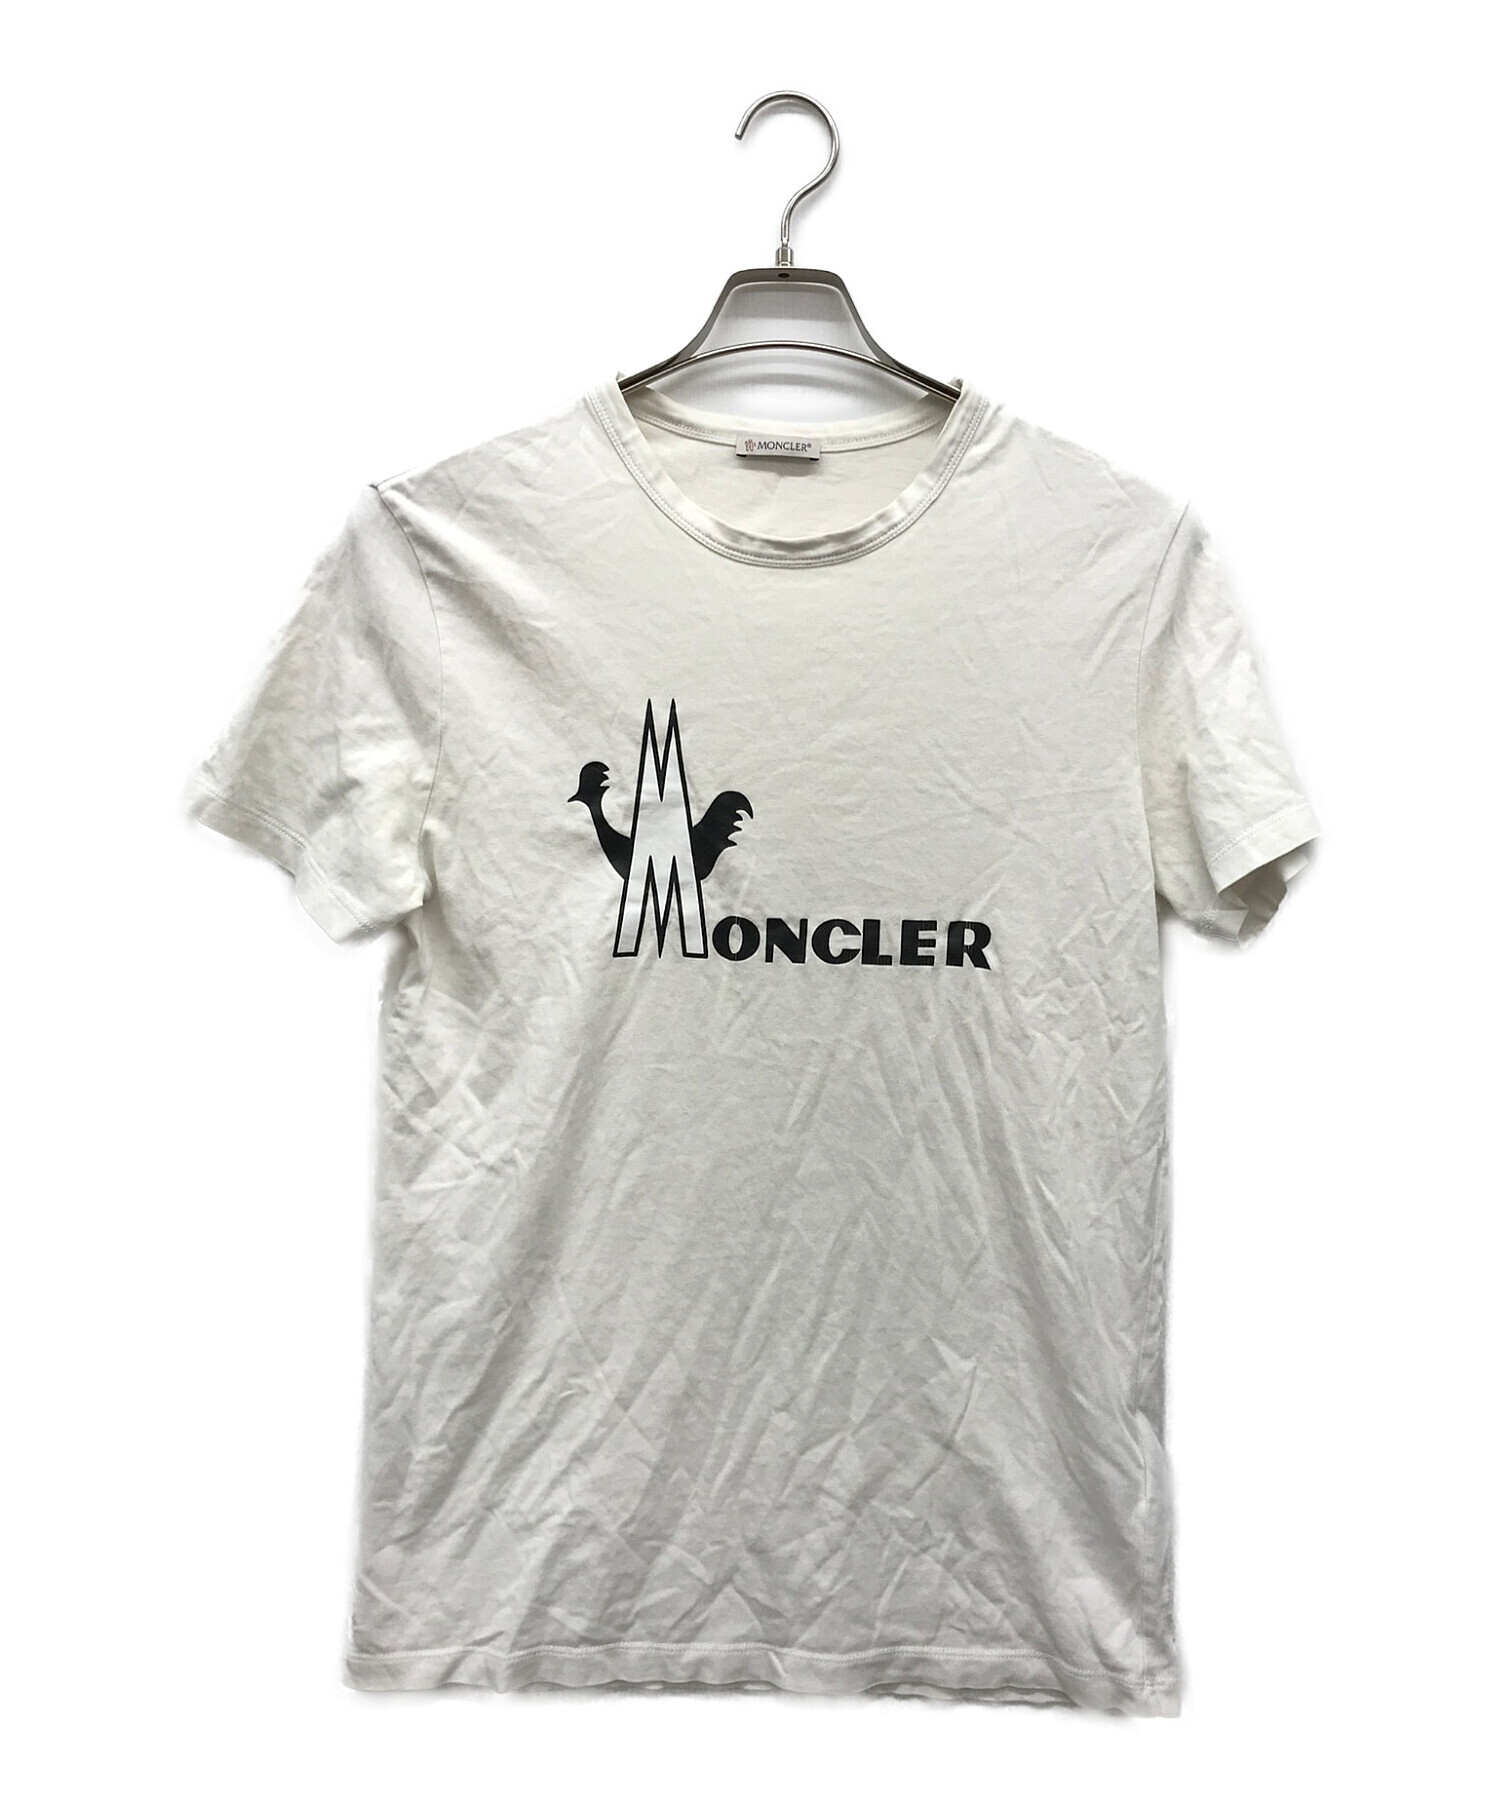 MONCLER (モンクレール) プリントTシャツ ホワイト サイズ:M